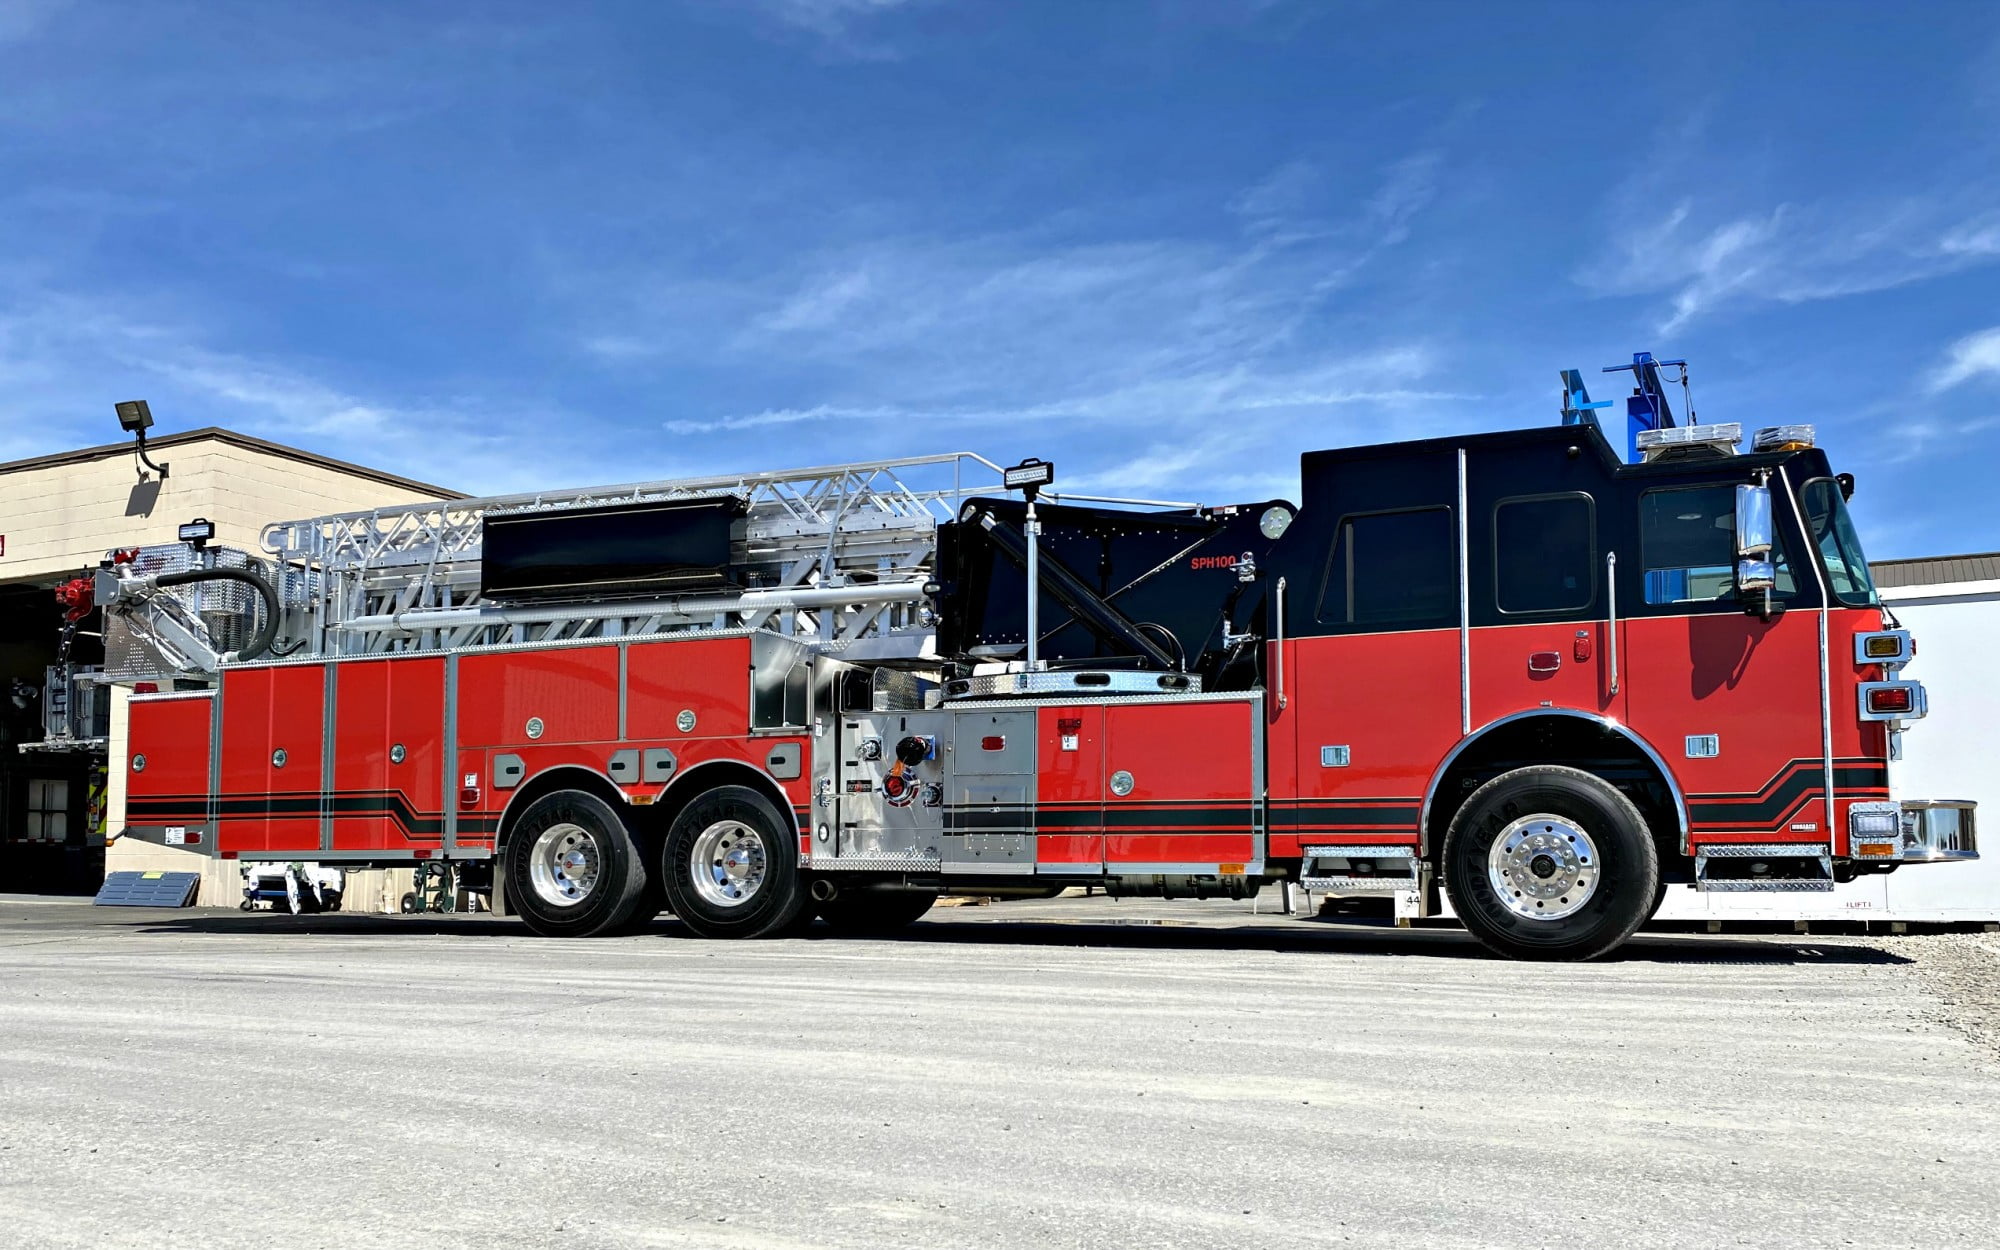 New Bern Fire Department